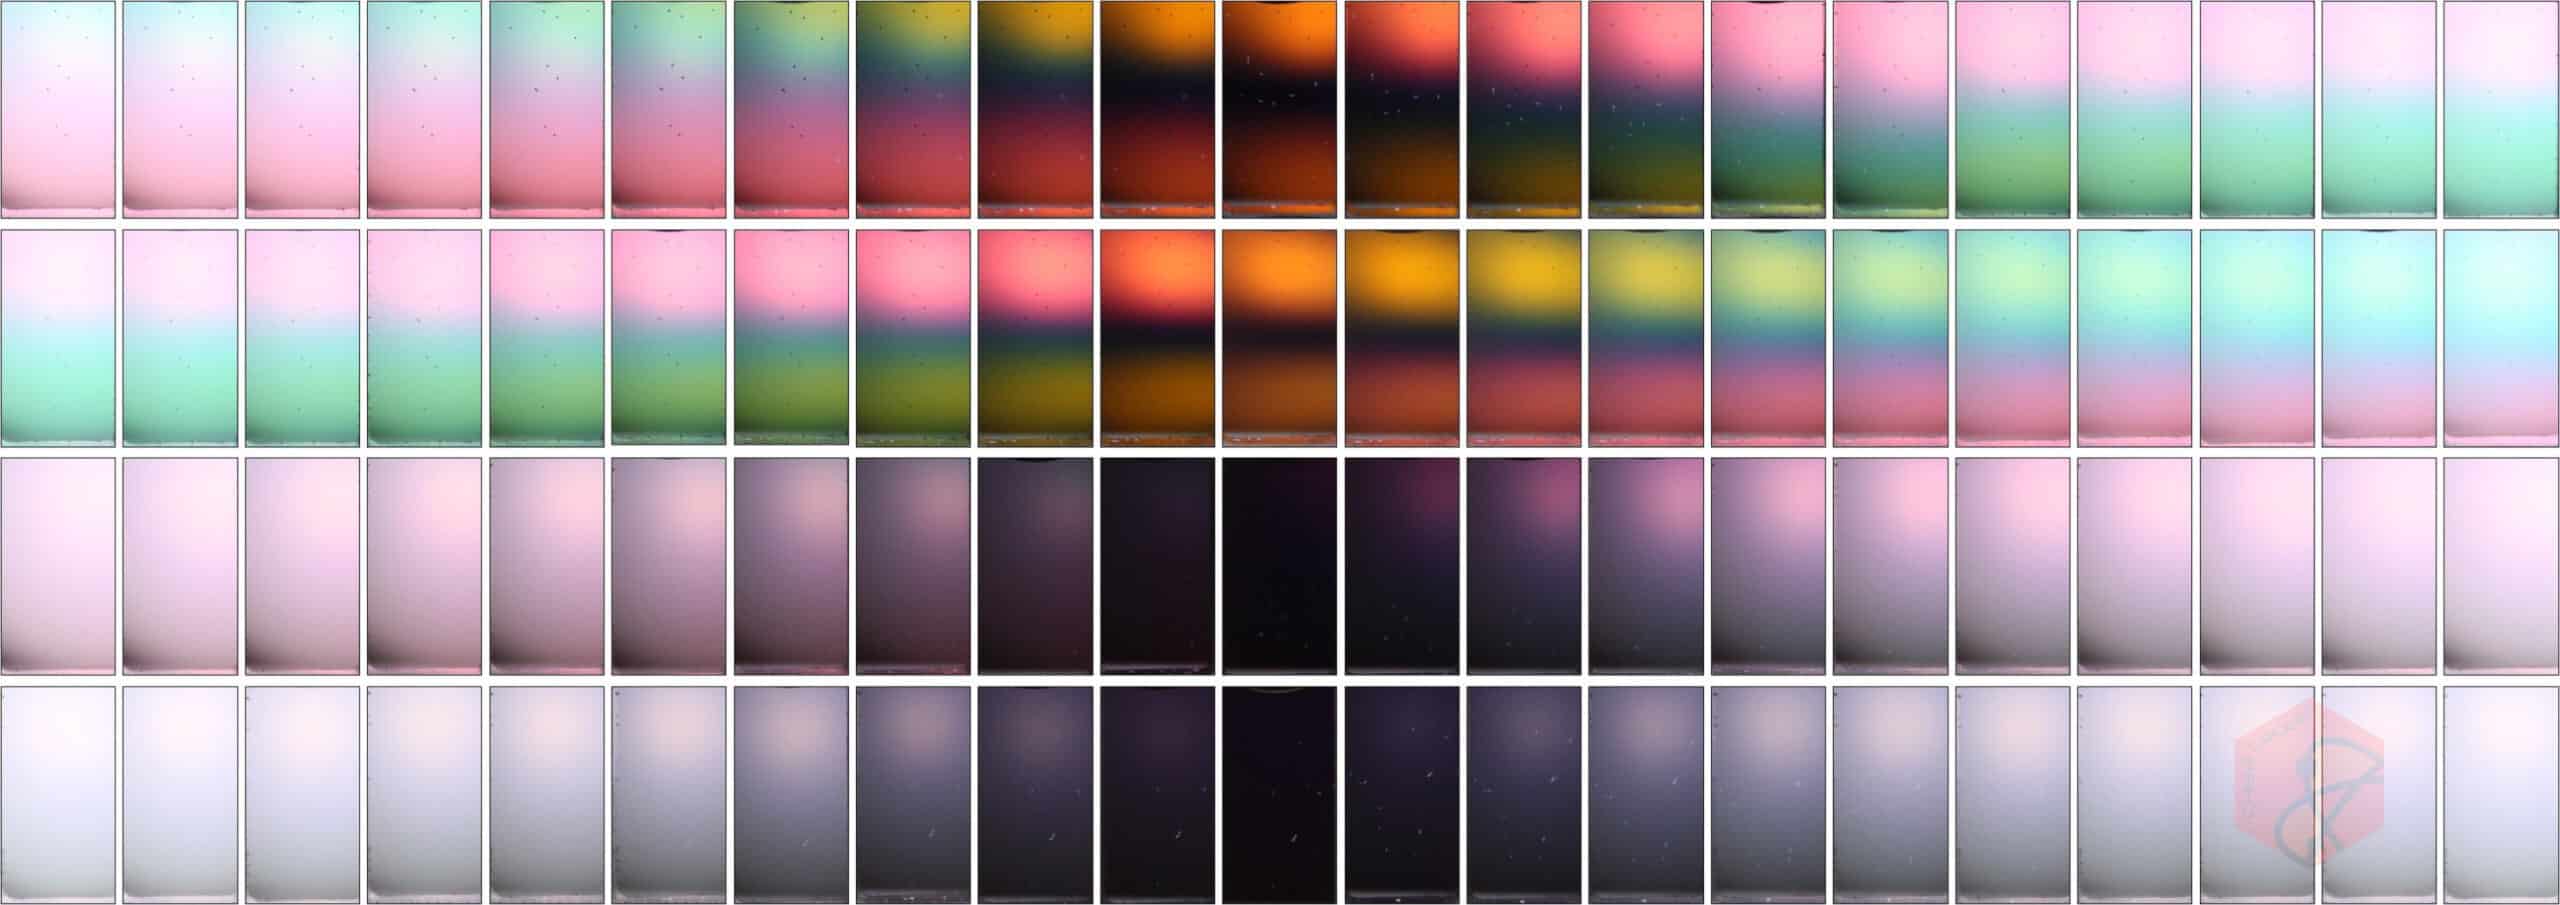 عکس‌ها رنگ‌های پر جنب و جوشی را نشان می‌دهند که با پراکندگی نانوذرات مغناطیسی در معرض میدان‌های مغناطیسی با توزیع‌های کایرال متفاوت، همانطور که از طریق لنزهای پلاریزه مشاهده می‌شوند، به نمایش گذاشته می‌شوند. منبع: آزمایشگاه یین، UC Riverside.